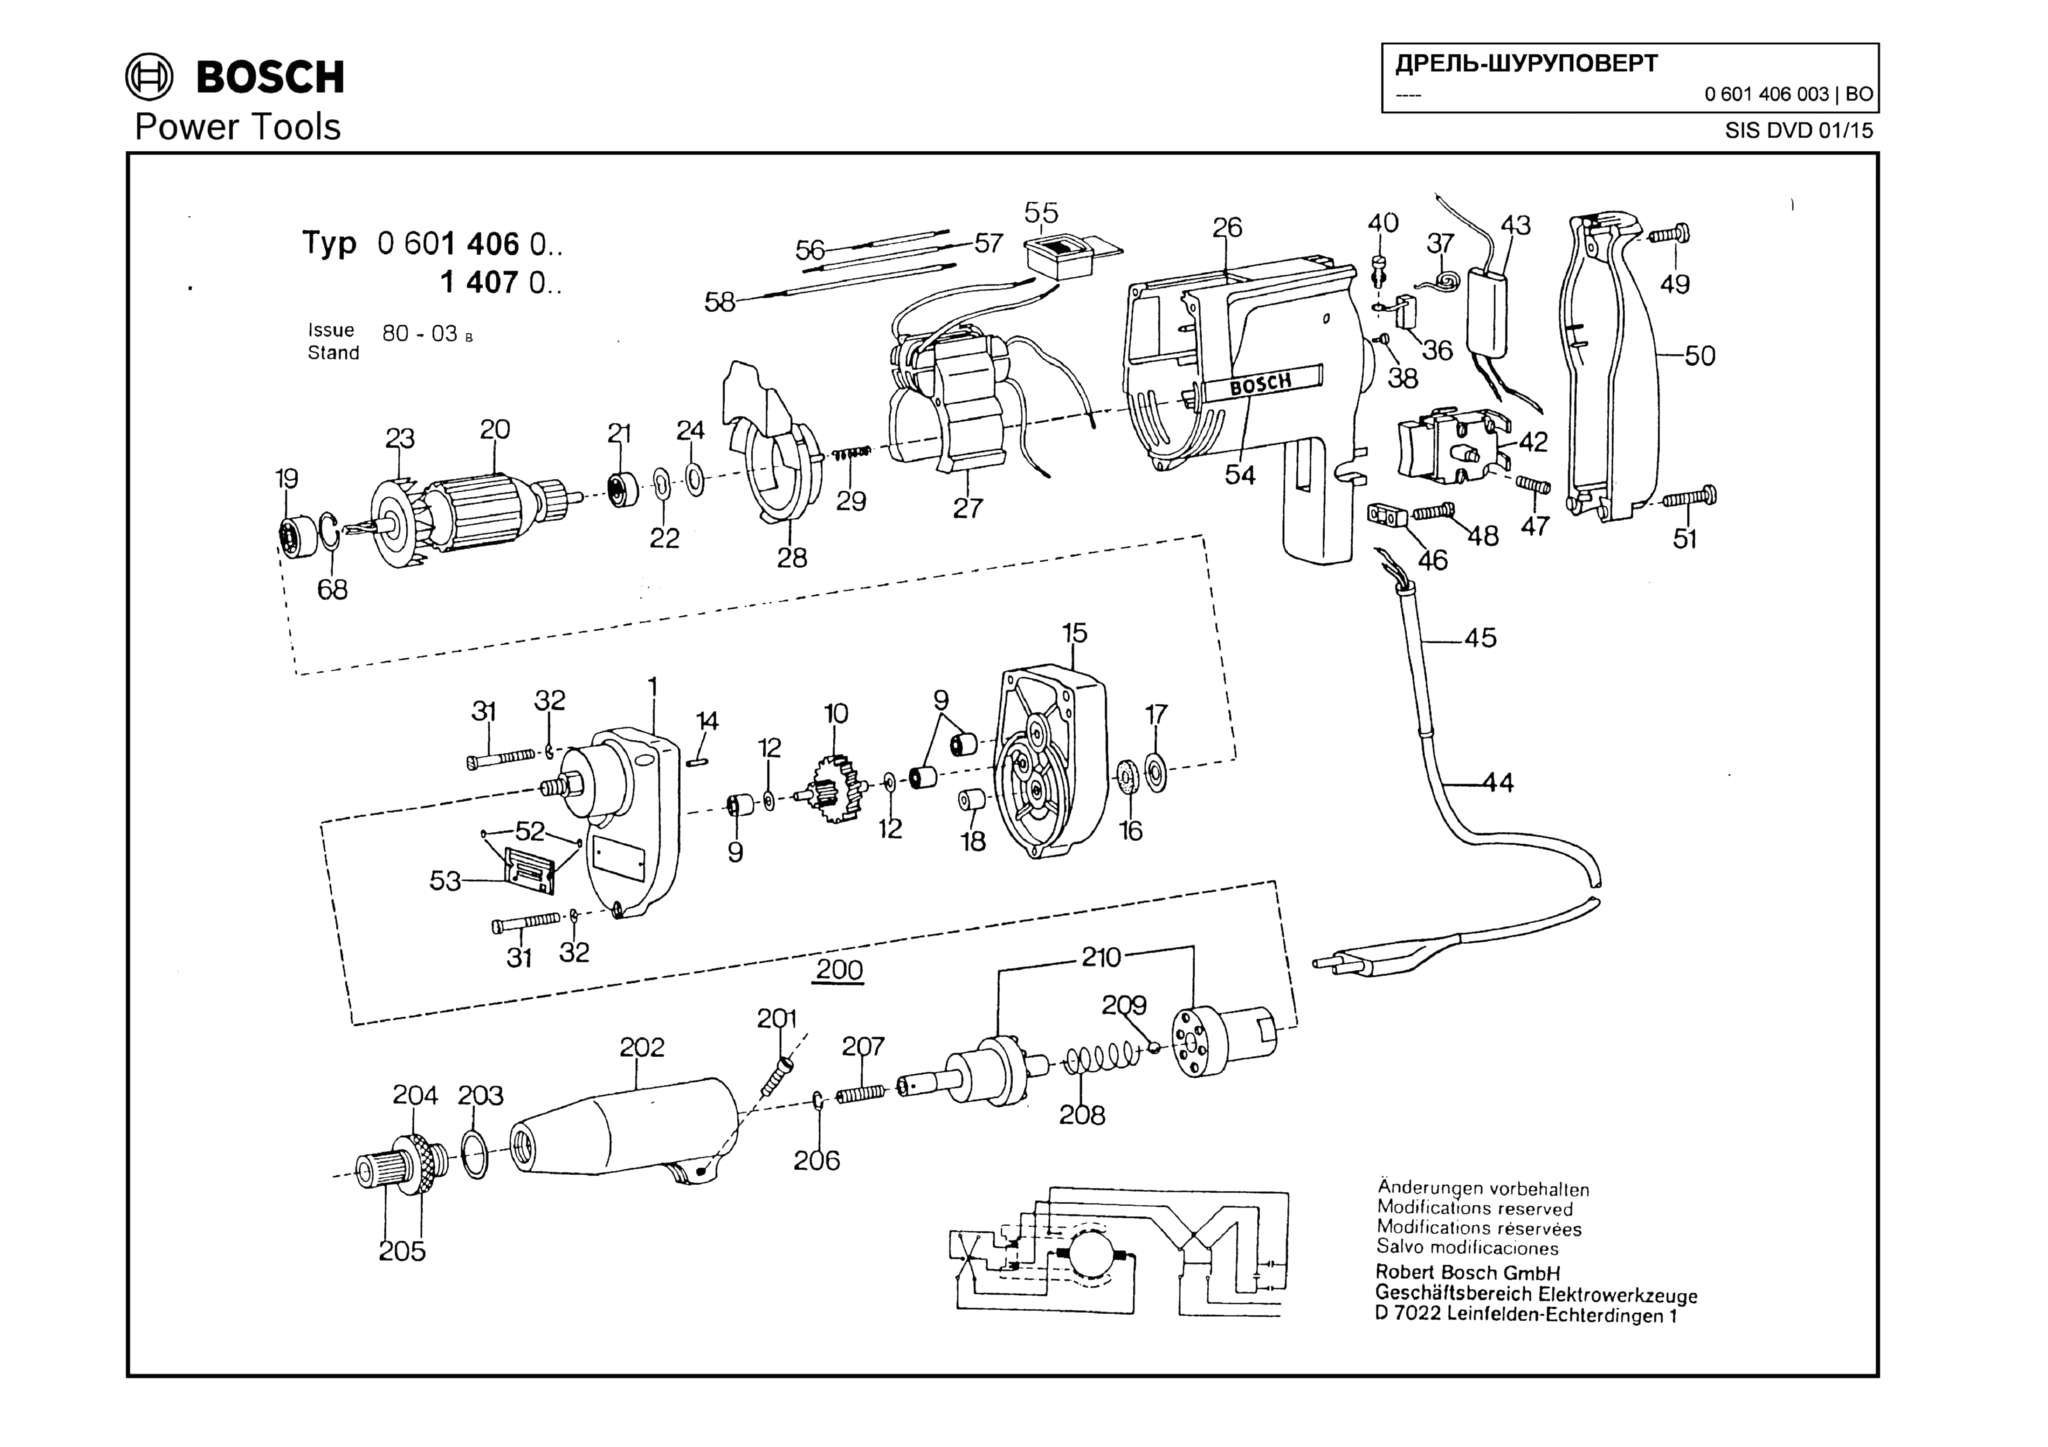 Запчасти, схема и деталировка Bosch (ТИП 0601406003)